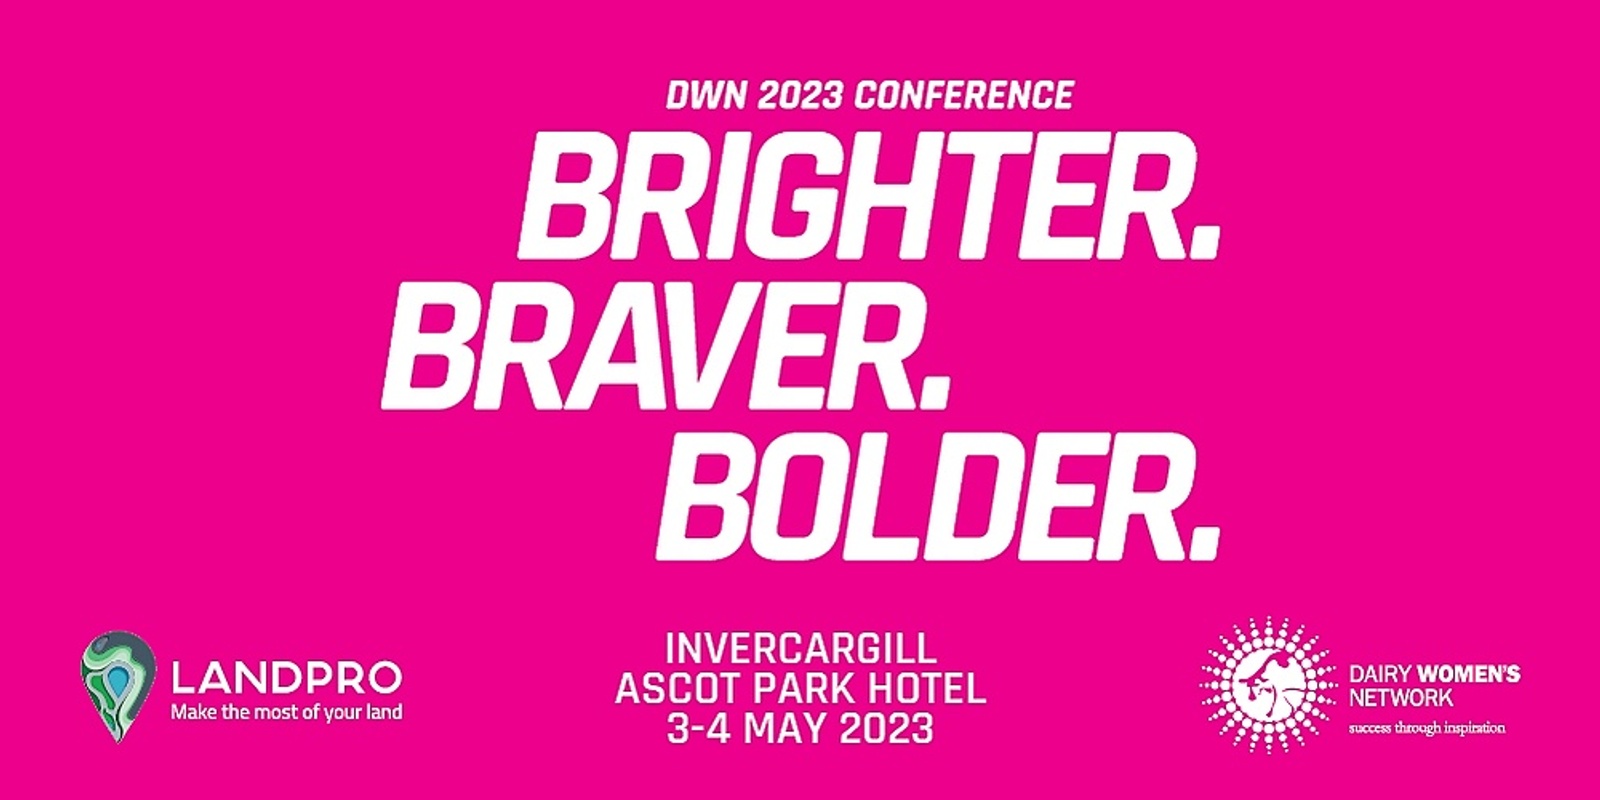 Banner image for DWN2023 Brighter. Braver. Bolder. Conference